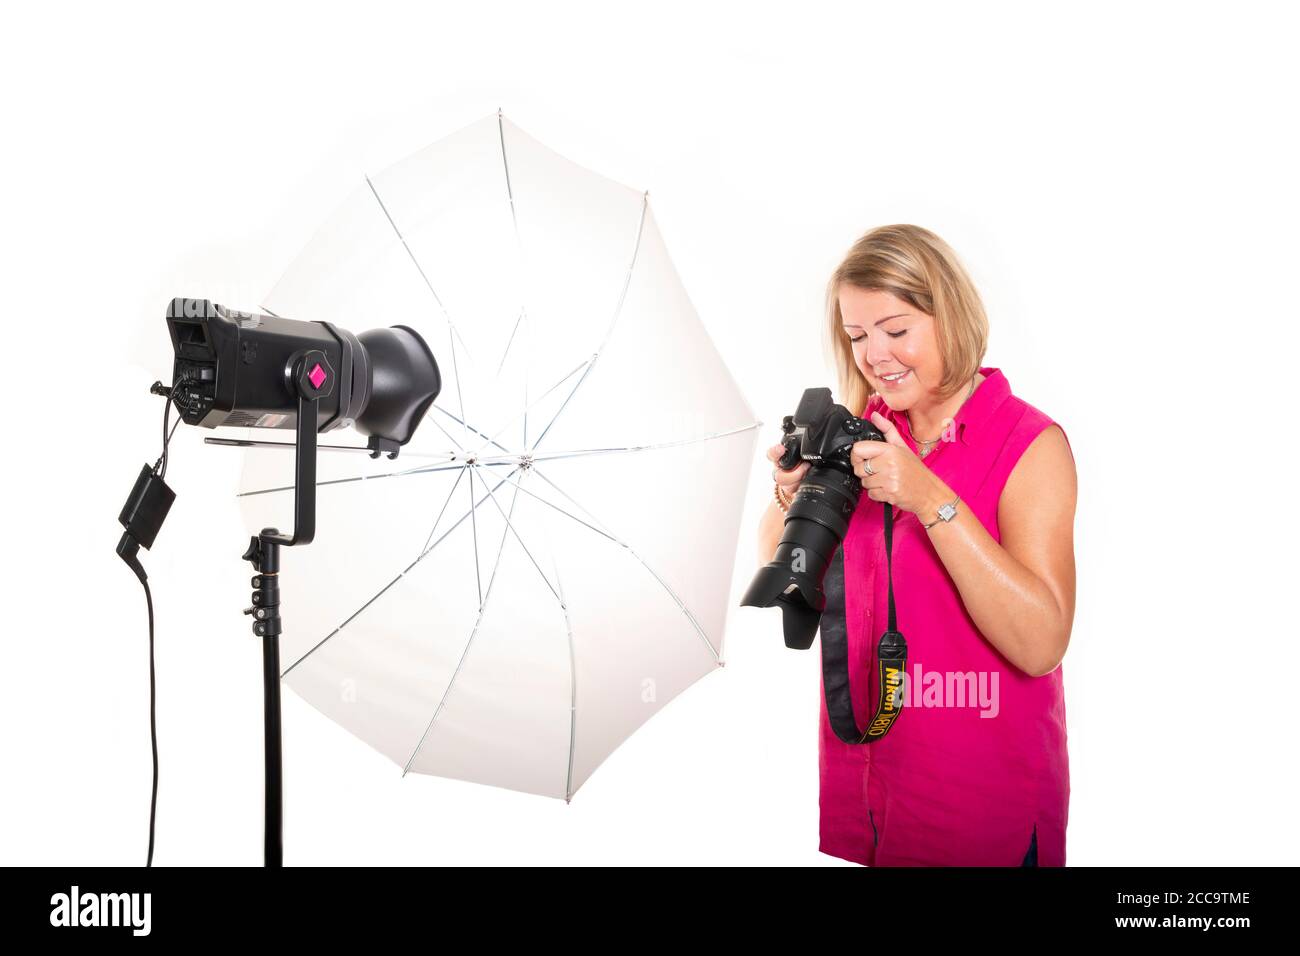 Ritratto orizzontale di un fotografo che controlla le immagini sul retro di una fotocamera DSLR mentre lavora in uno studio. Foto Stock